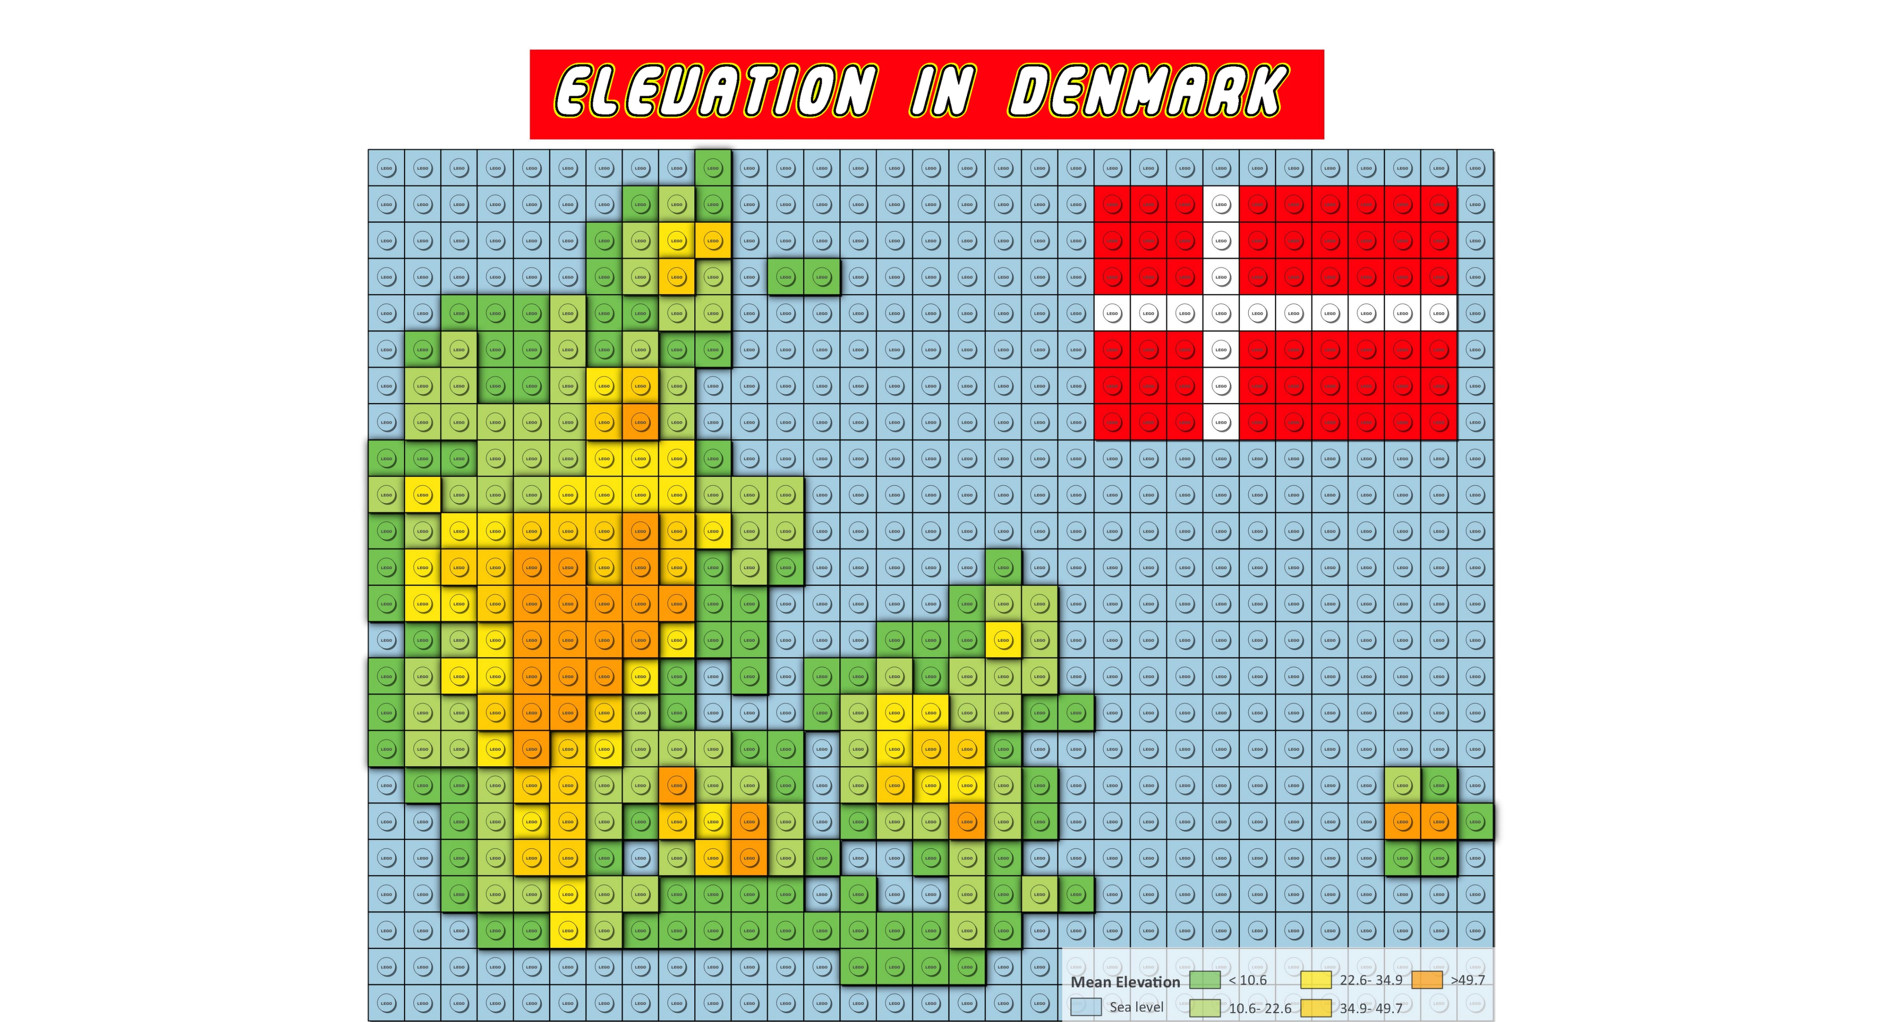 Lego Denmark